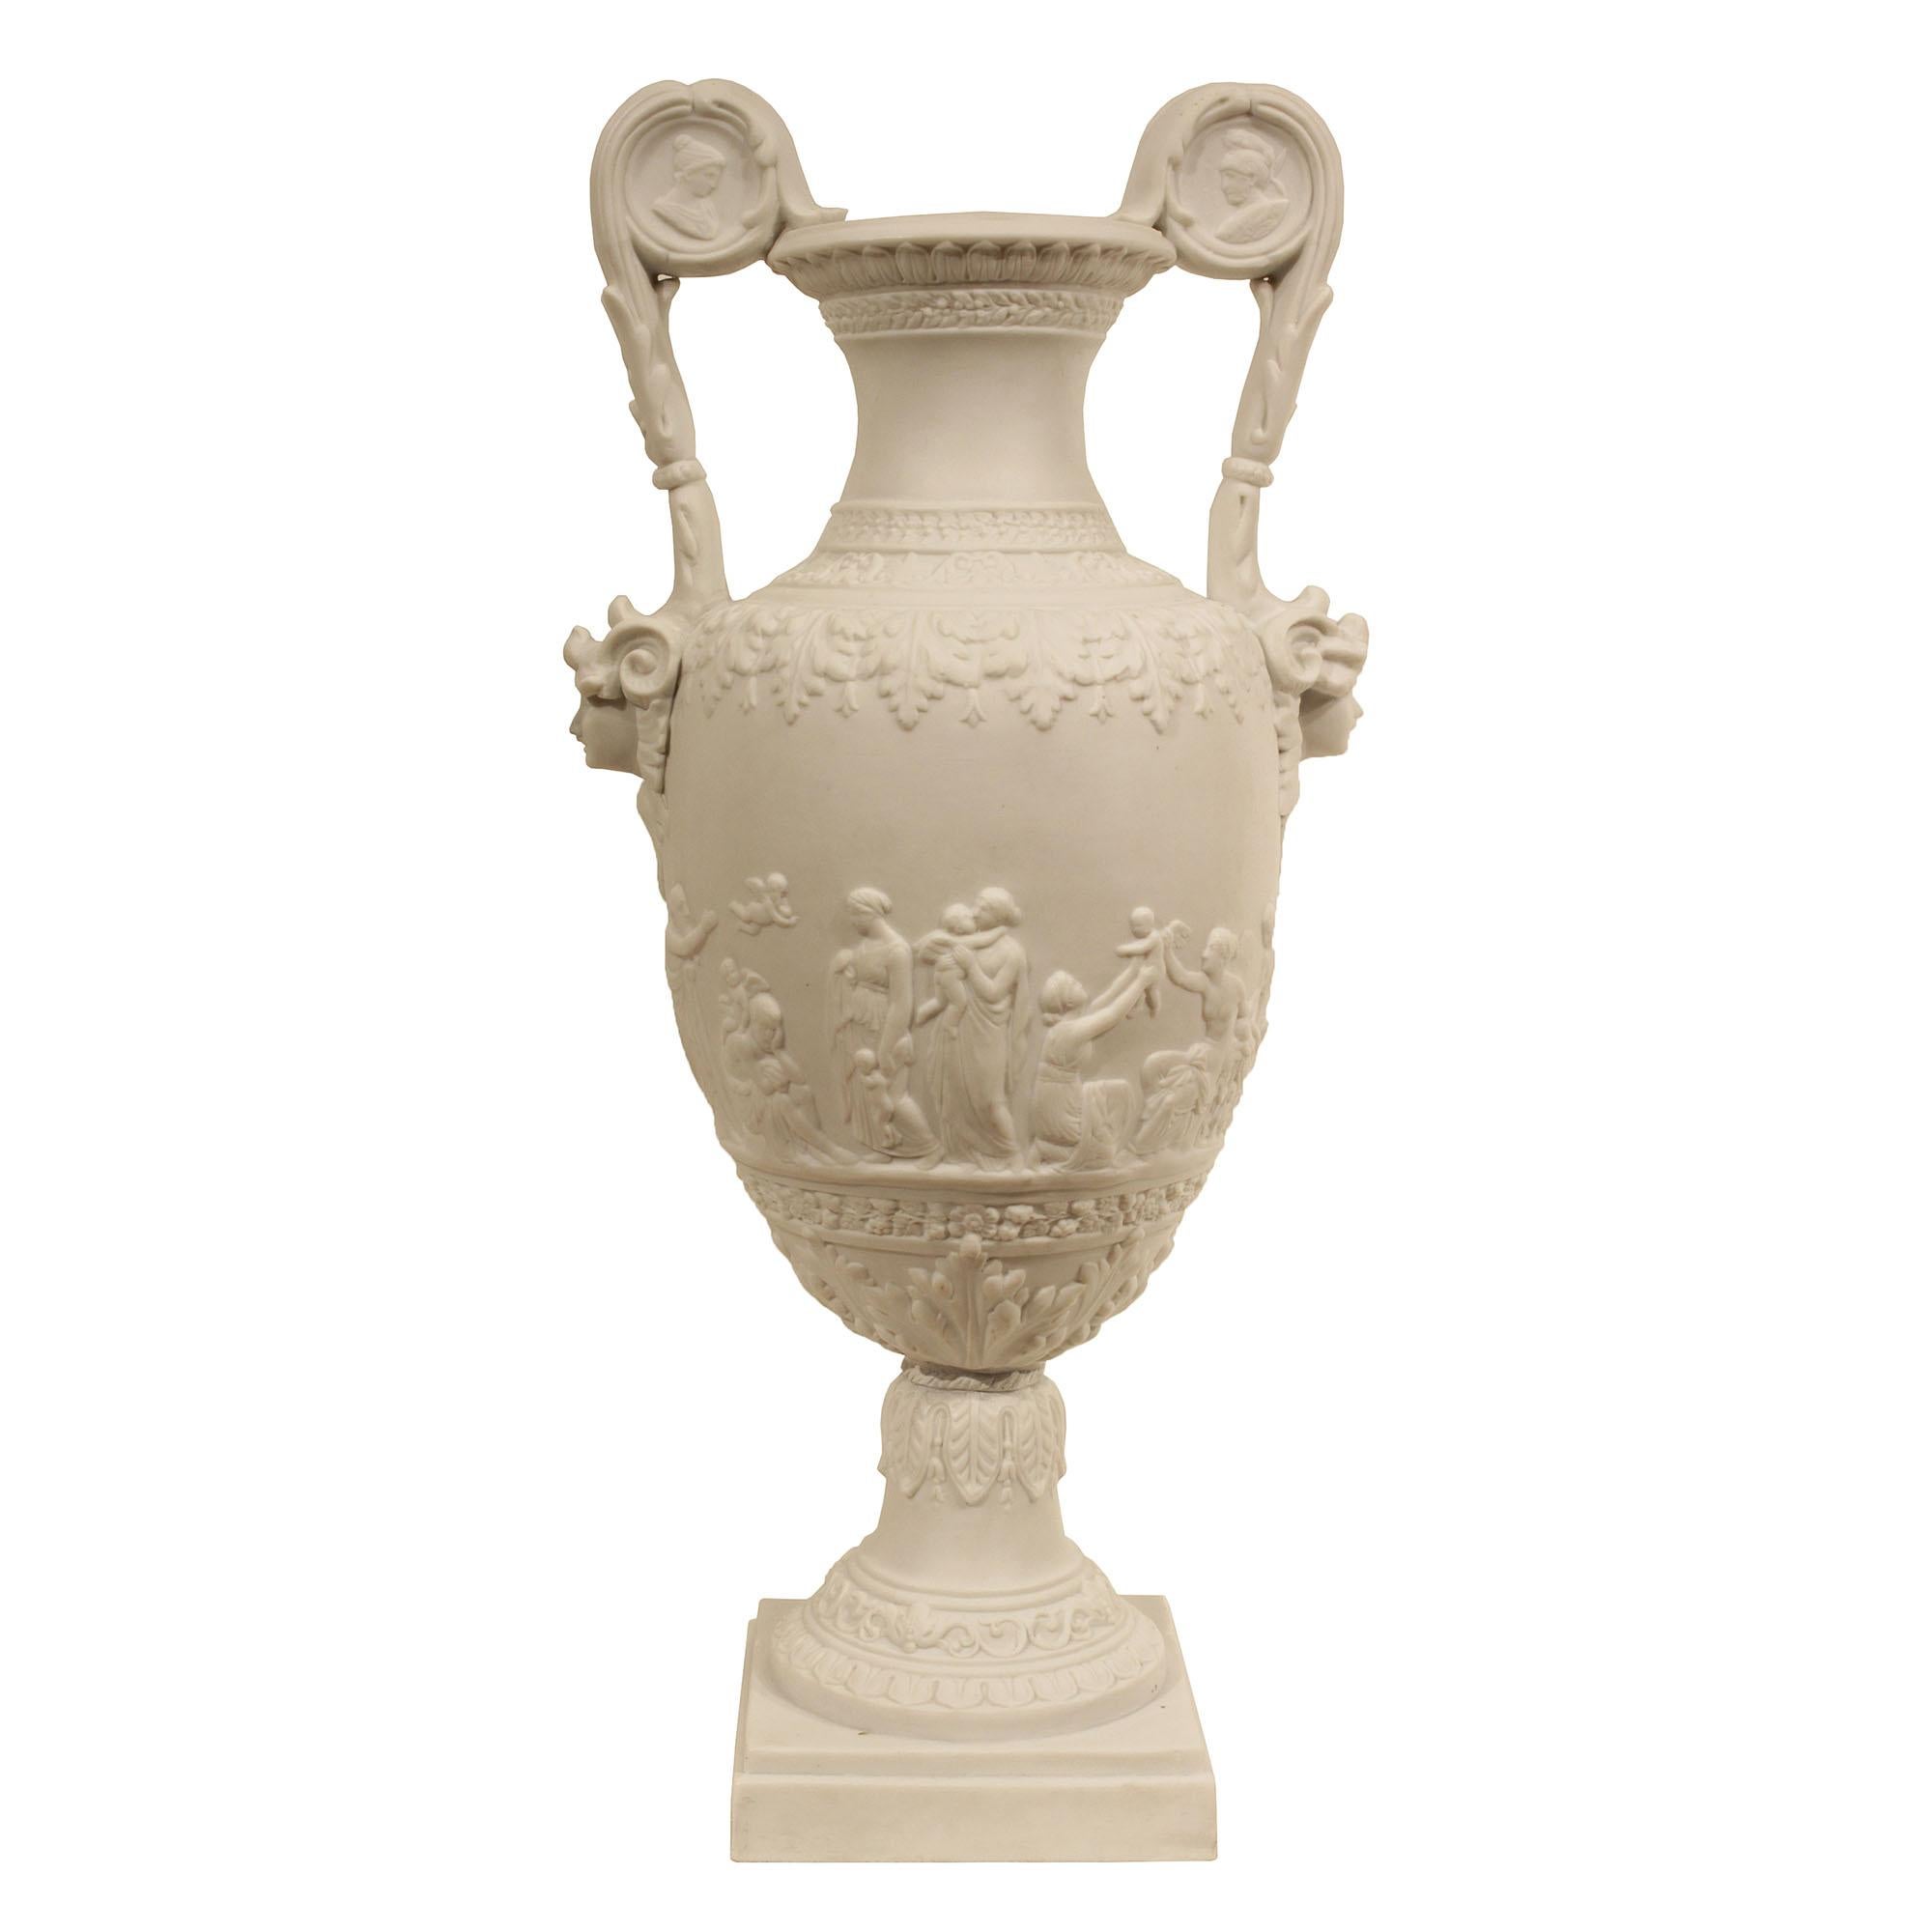 Ein Paar Porzellanurnen aus Biscuit de Sèvres aus dem 19. Jahrhundert. Jede Urne steht auf einem gesprenkelten quadratischen Sockel, der unter dem Sockel mit einem Rai de Coeur-Motiv unter einer Girlande und Akanthusblättern verziert ist. Die Urne